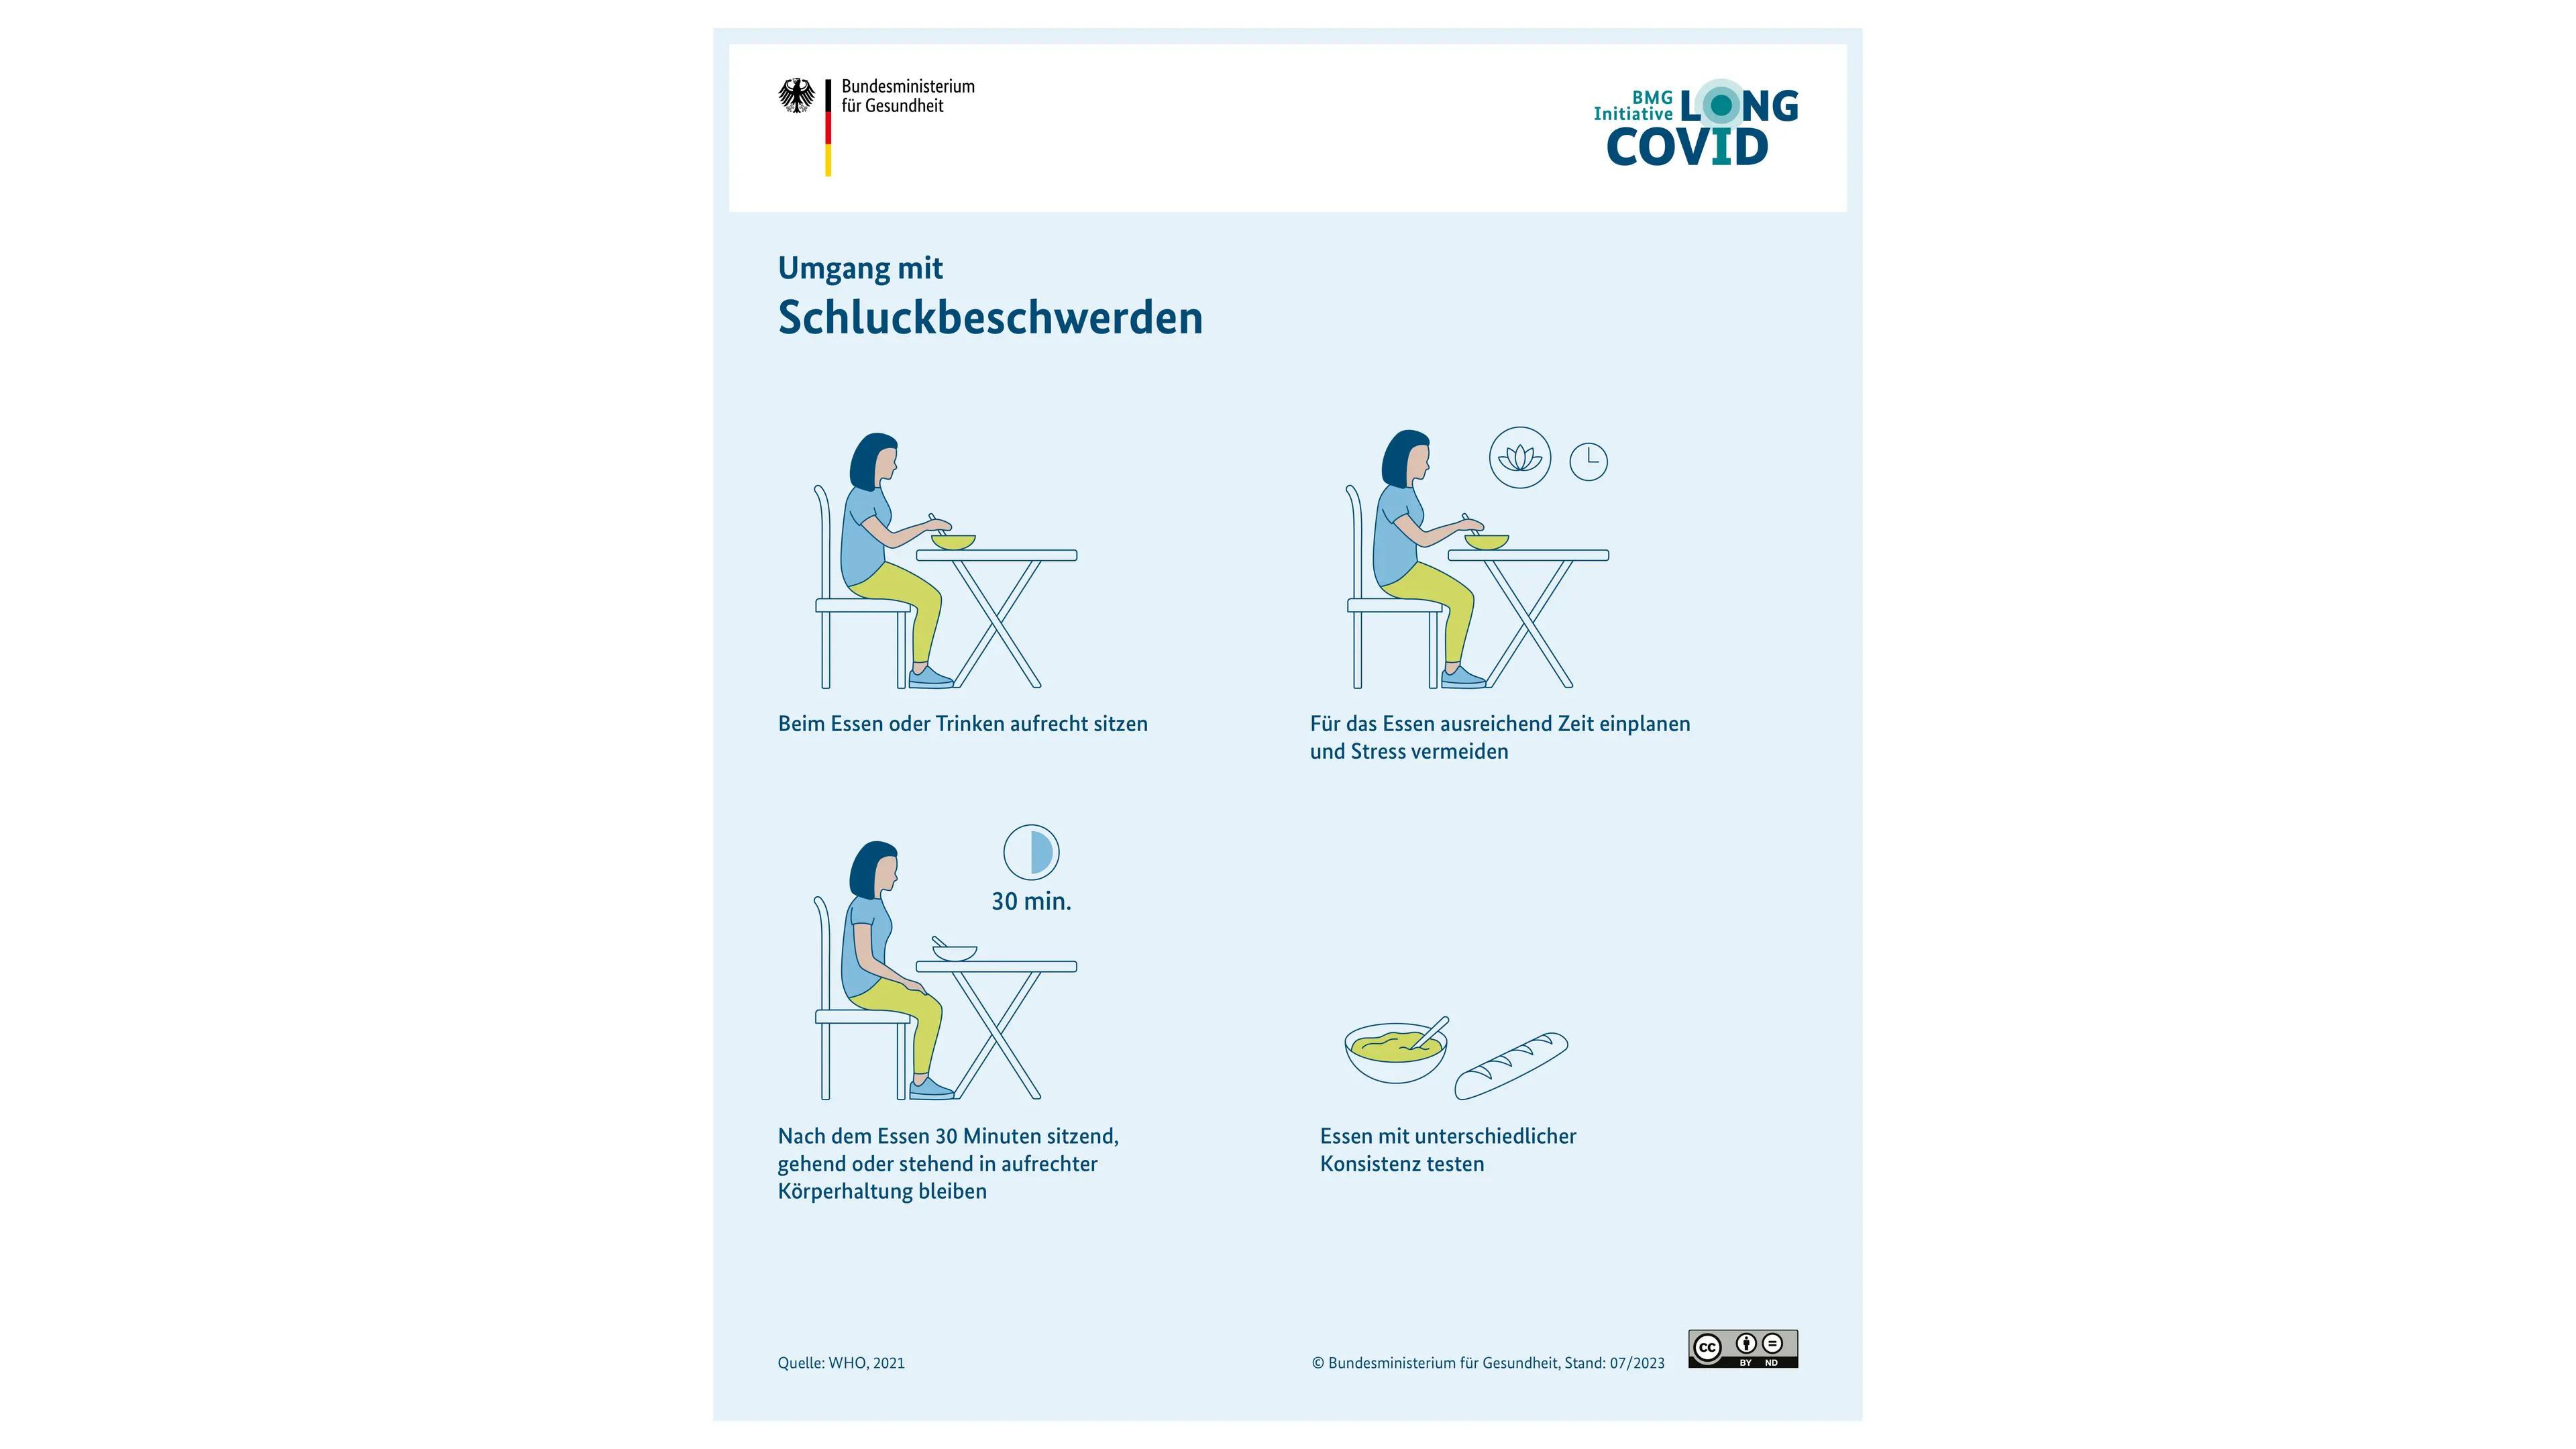 Grafik: Tipps zum Umgang mit Schluckbeschwerden, Person wird in verschiedenen sitzenden Positionen gezeigt